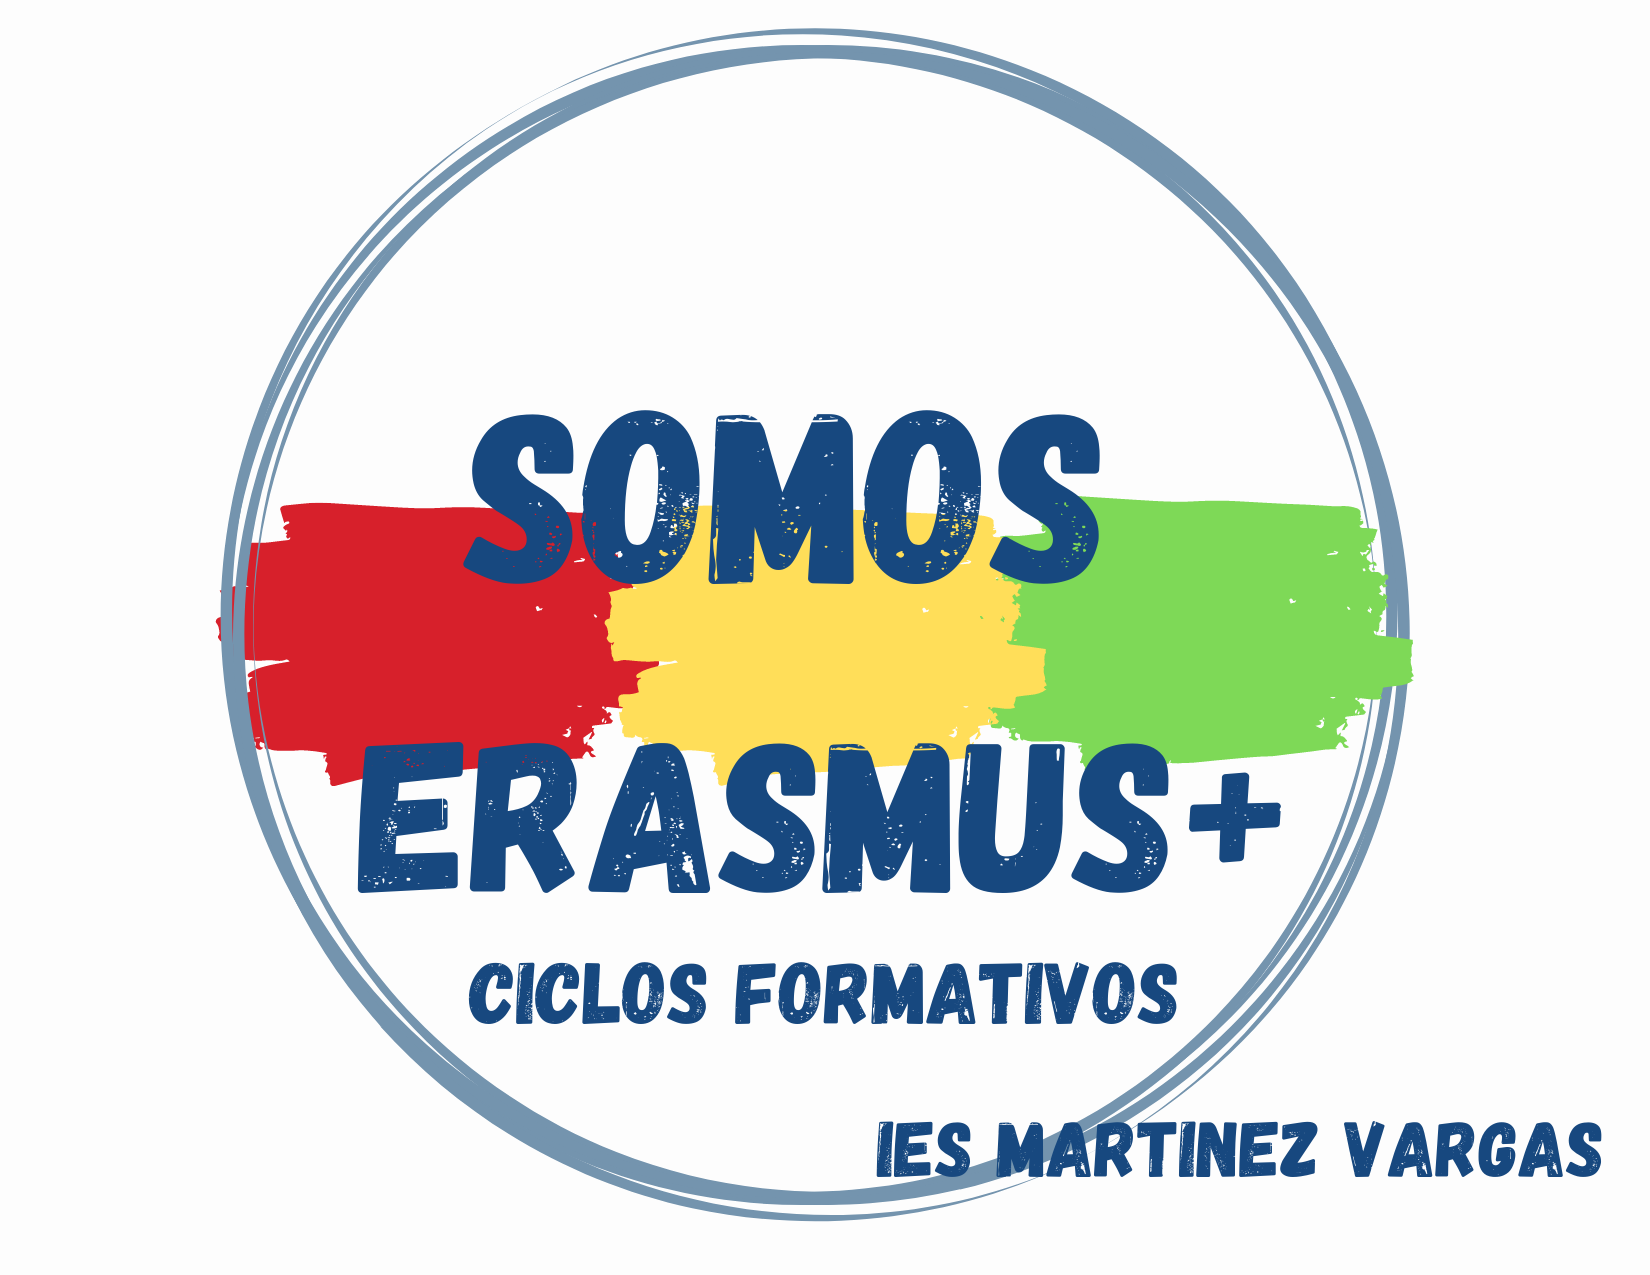 ERASMUS+ CICLOS FORMATIVOS  IES MARTINEZ VARGAS